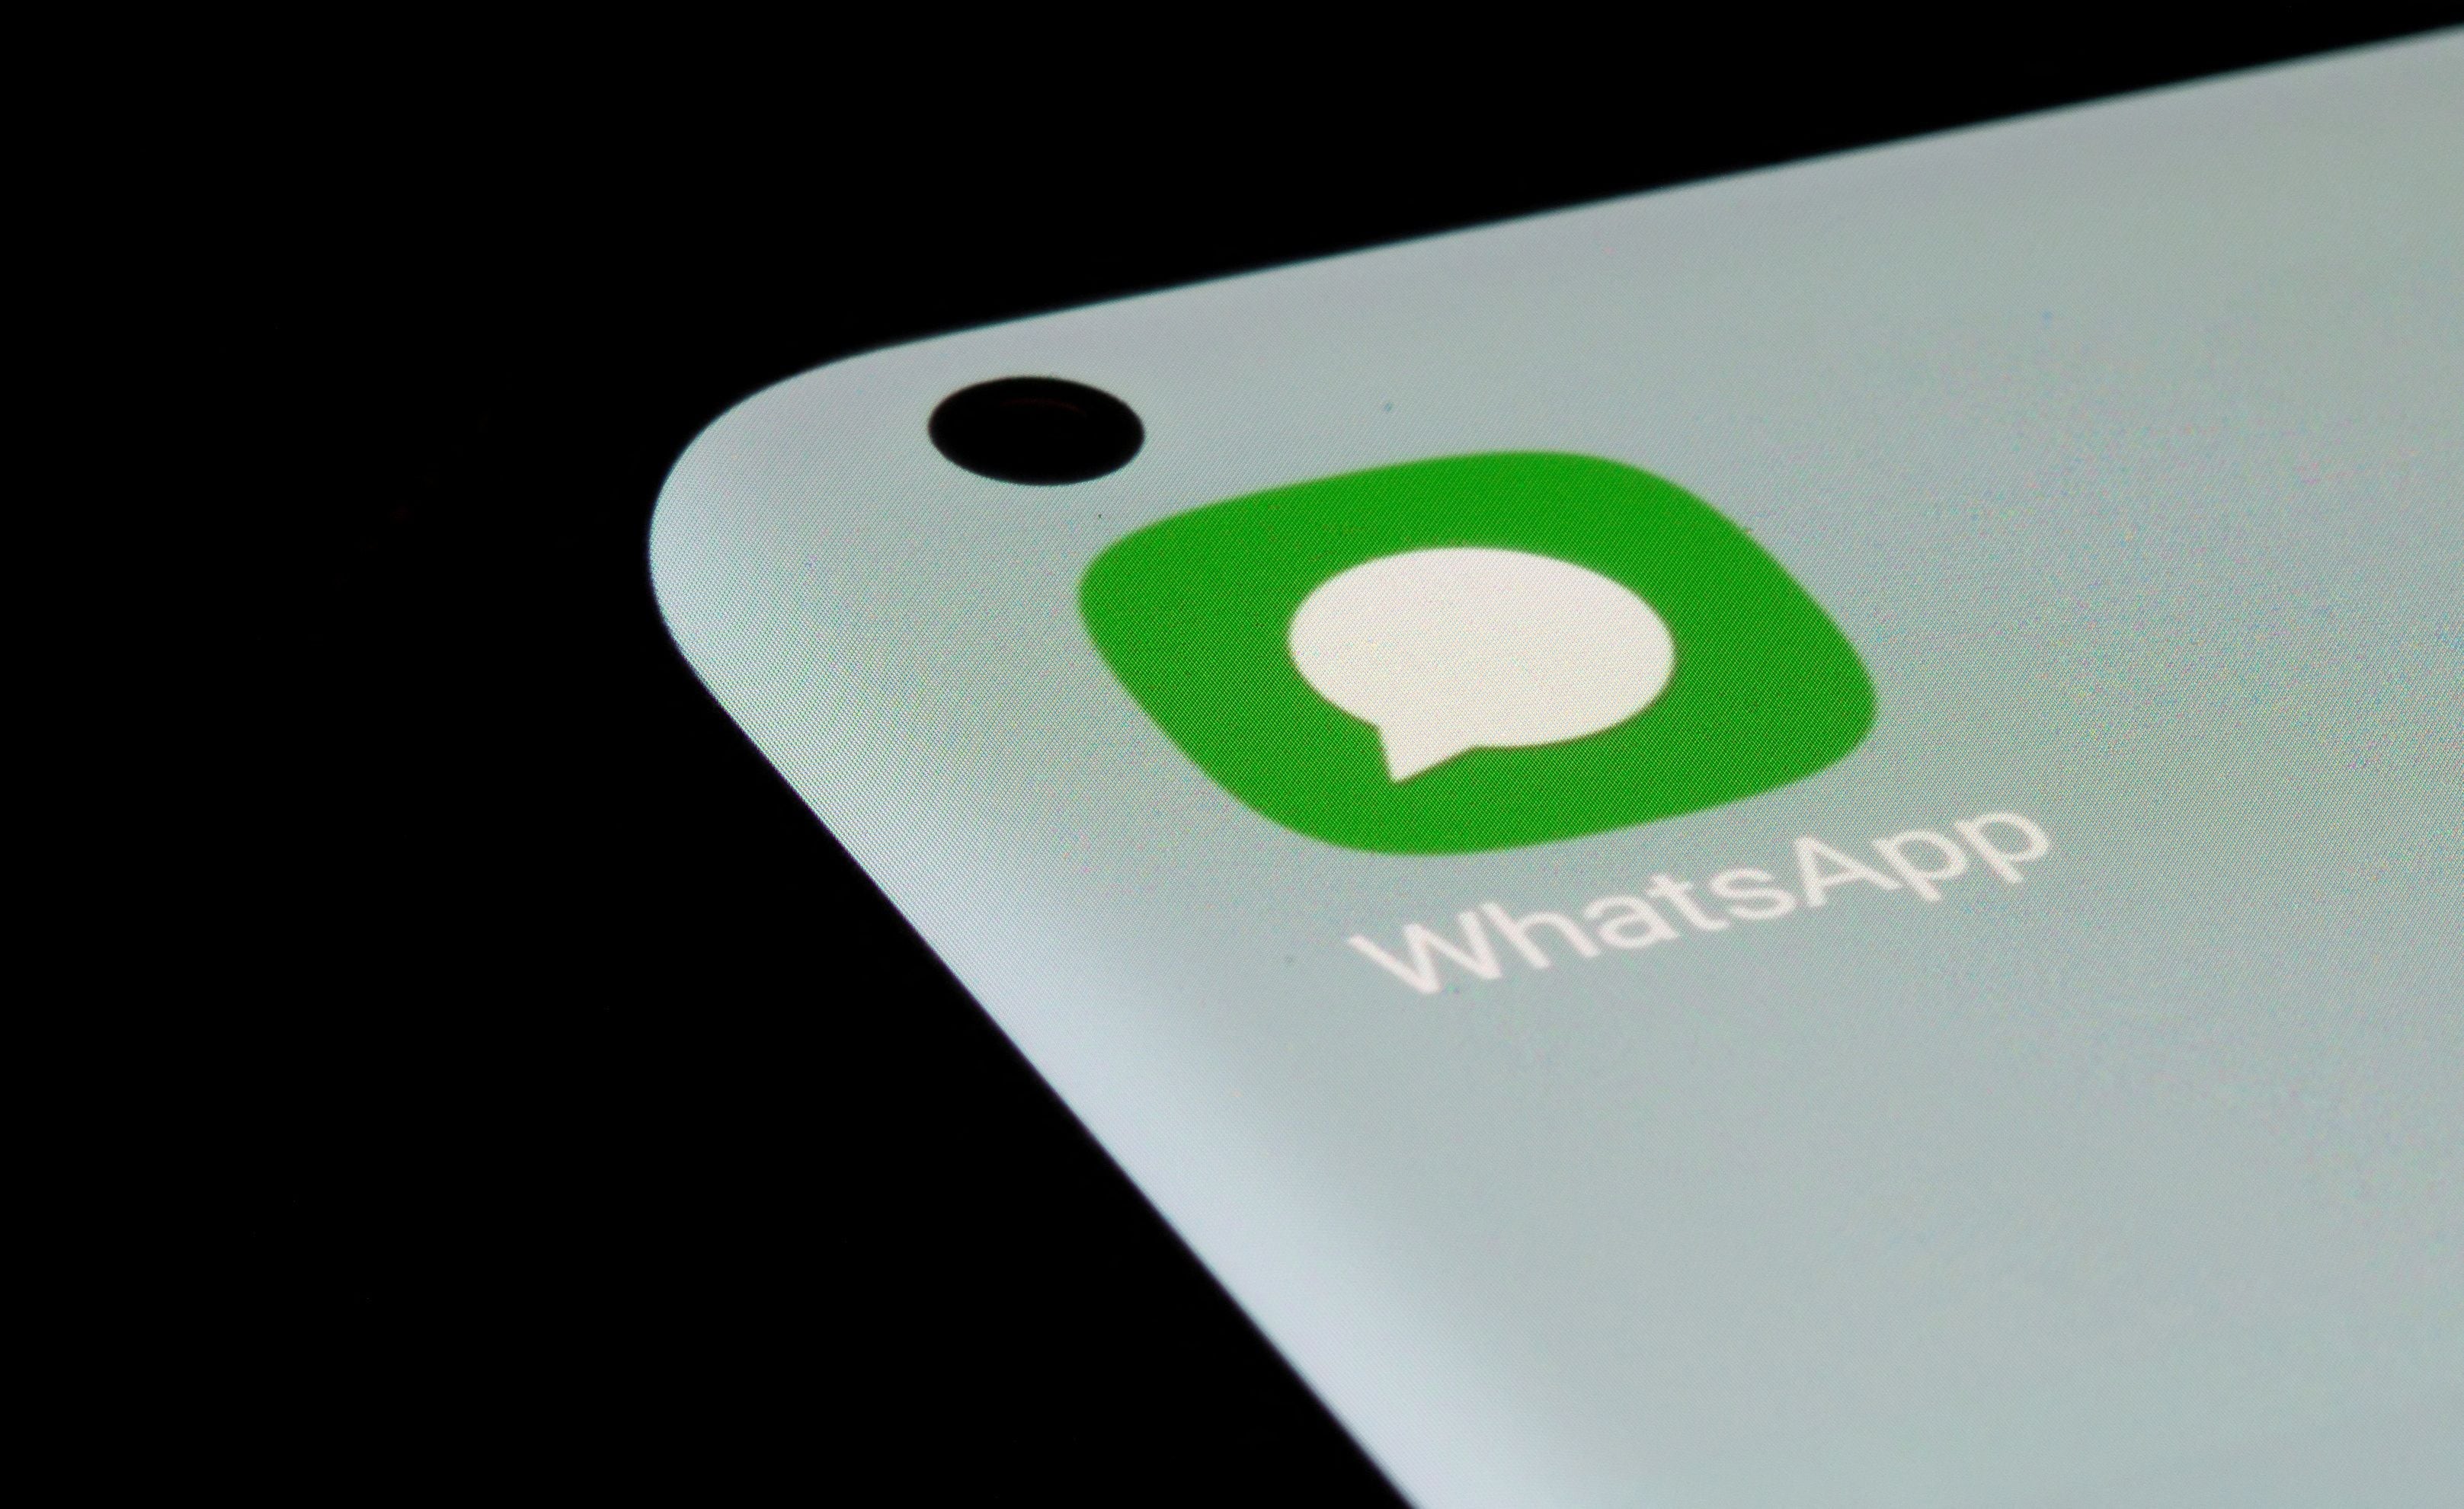 WhatsApp es una de las aplicaciones de mensajería instantánea más usadas en el mundo se actualiza constantemente para mejorar en su principales prioridades, que son la seguridad y privacidad. (REUTERS/Dado Ruvic/Illustration/File Photo)